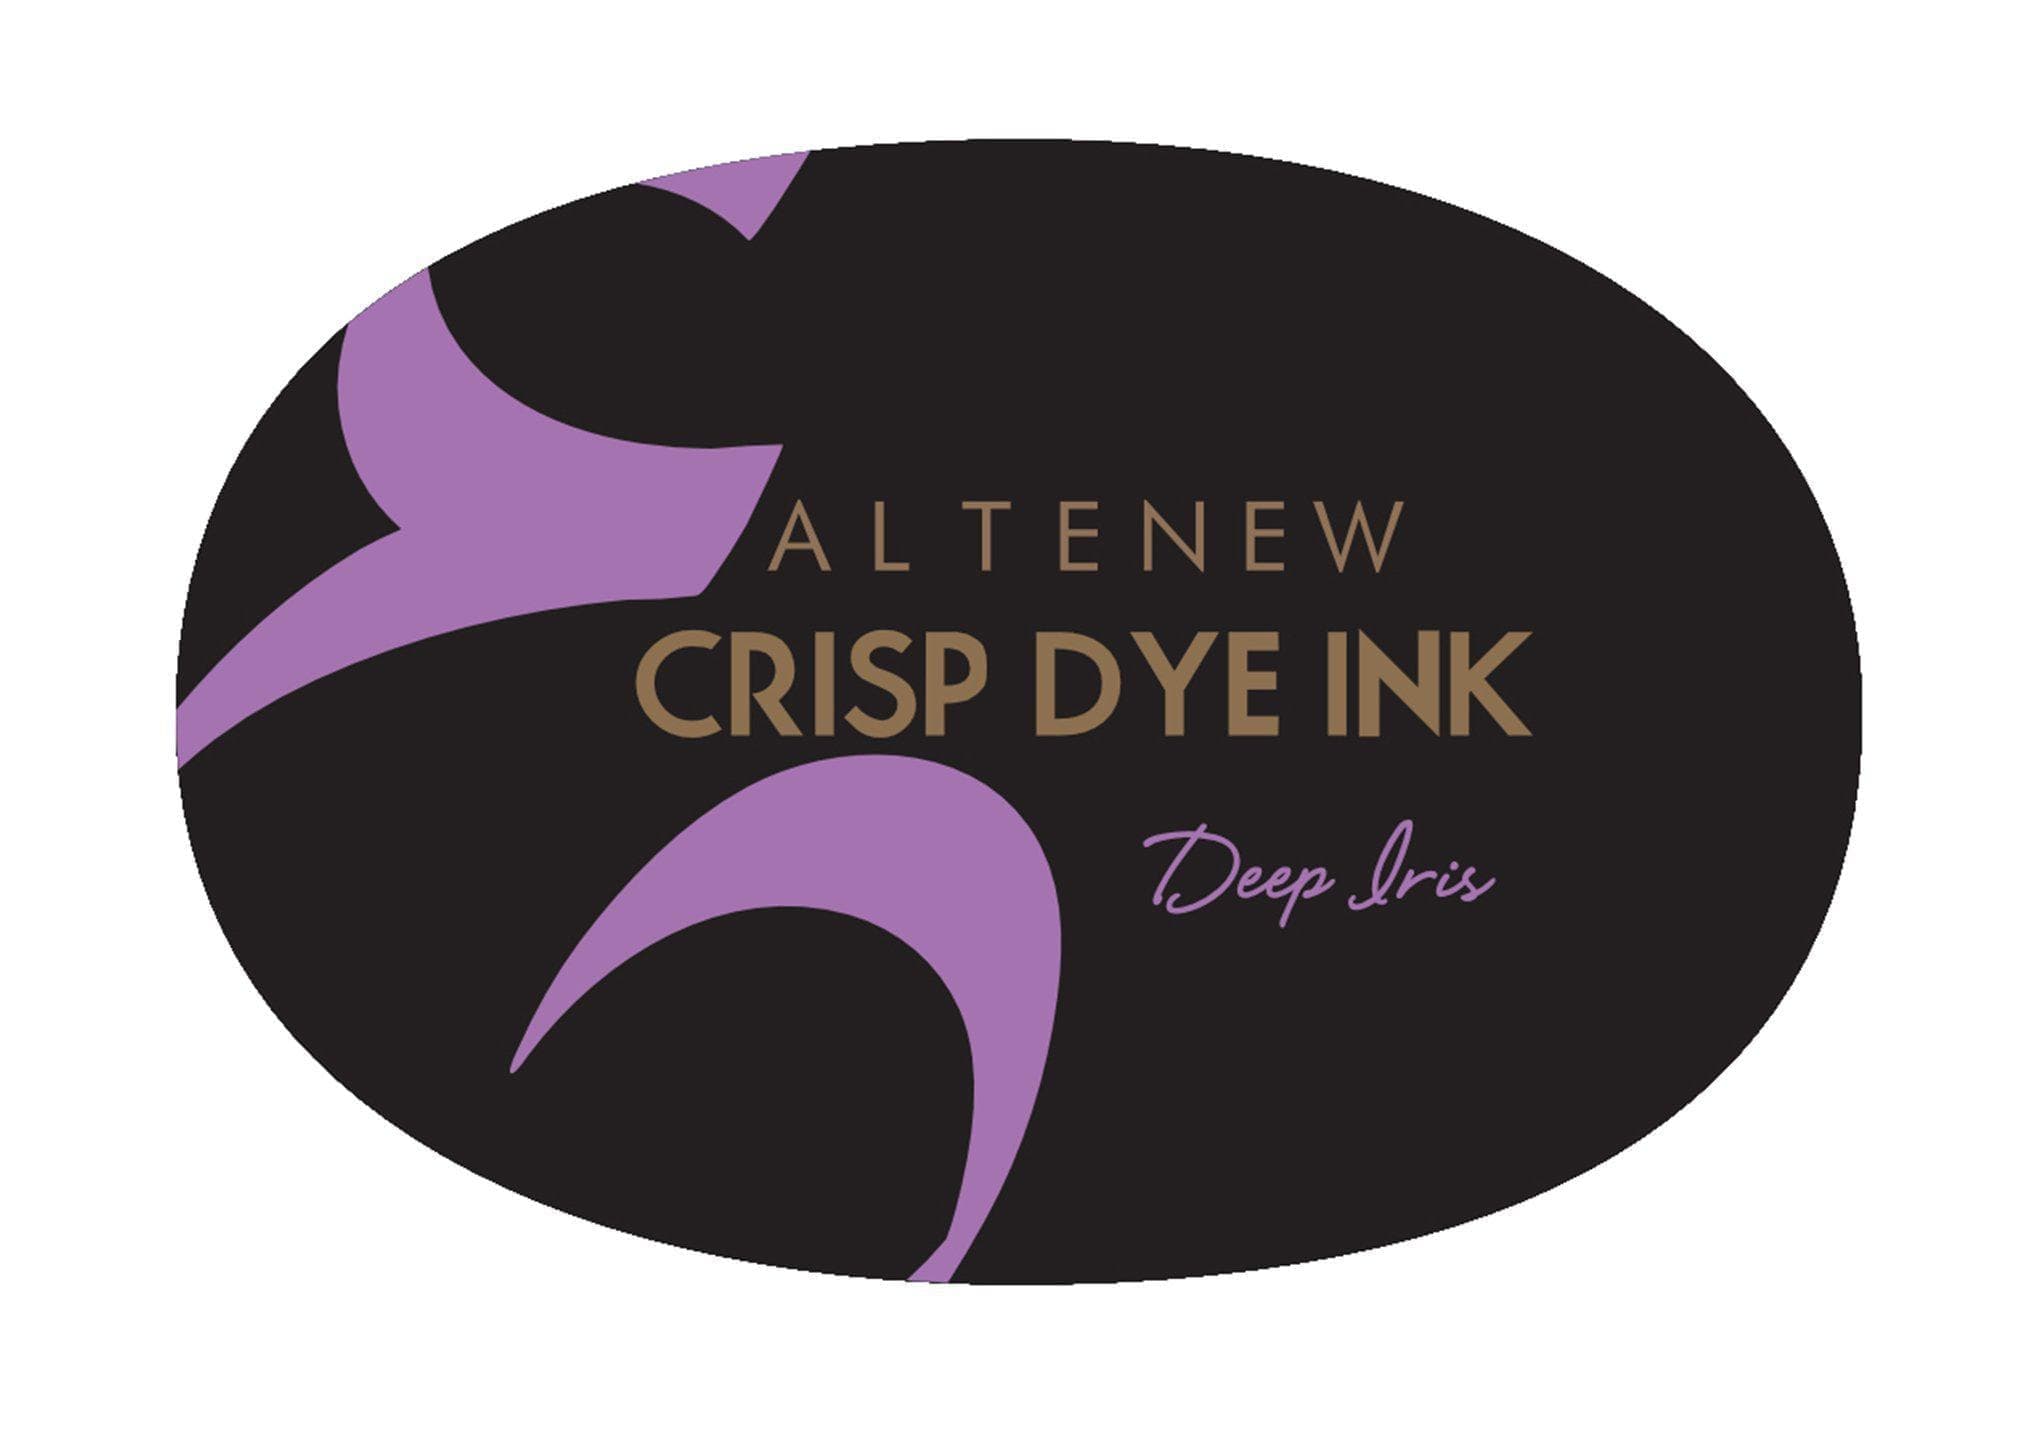 Deep Iris Crisp Dye Ink